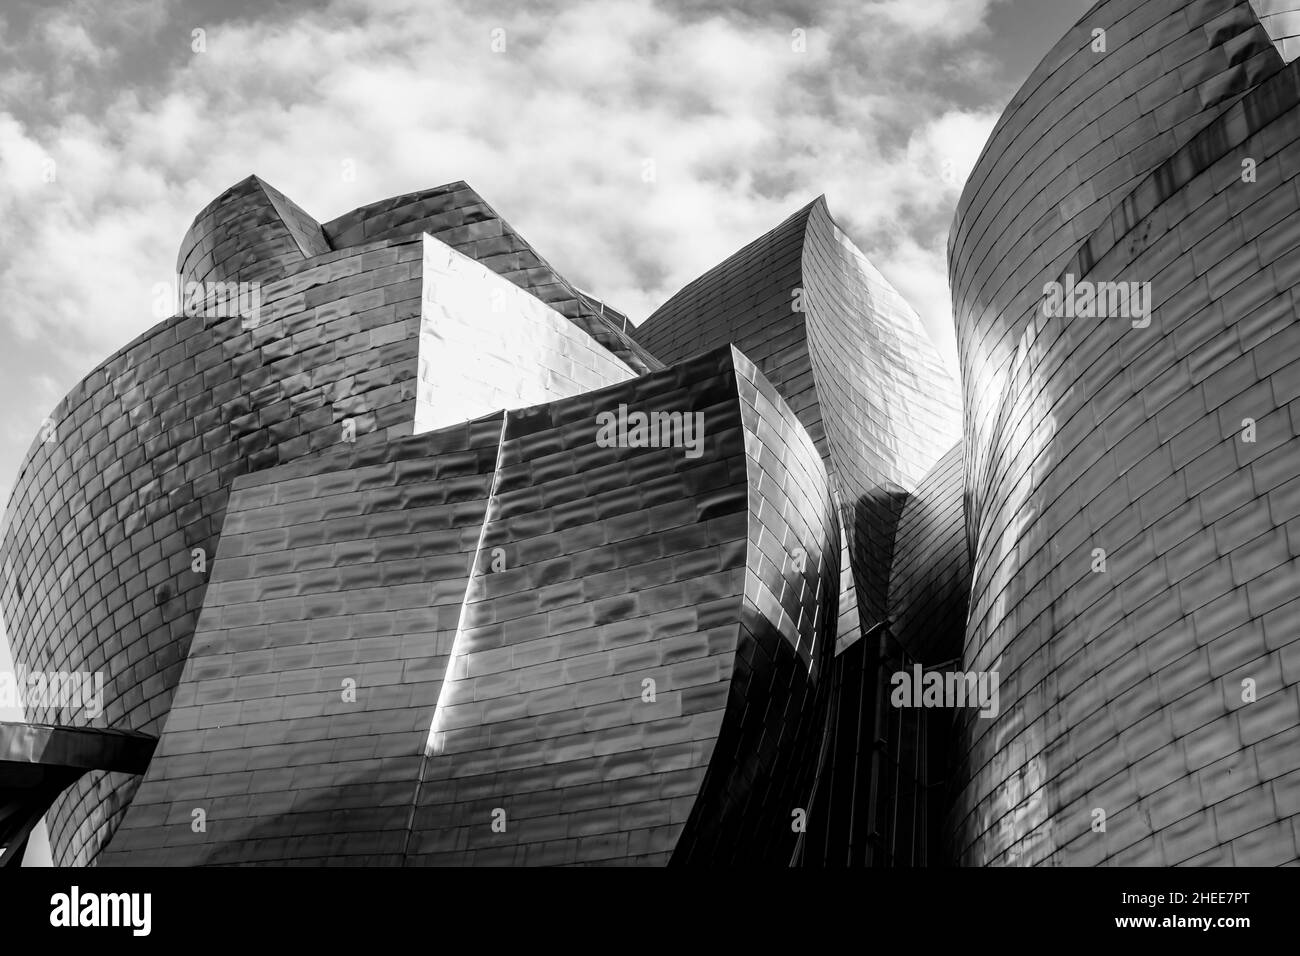 Bilbao, Espagne - 22 avril 2021 : Musée Guggenheim formes en titane façade de la ville de Bilbao.Architecture de bâtiment moderne conçue par Frank Gehry Banque D'Images